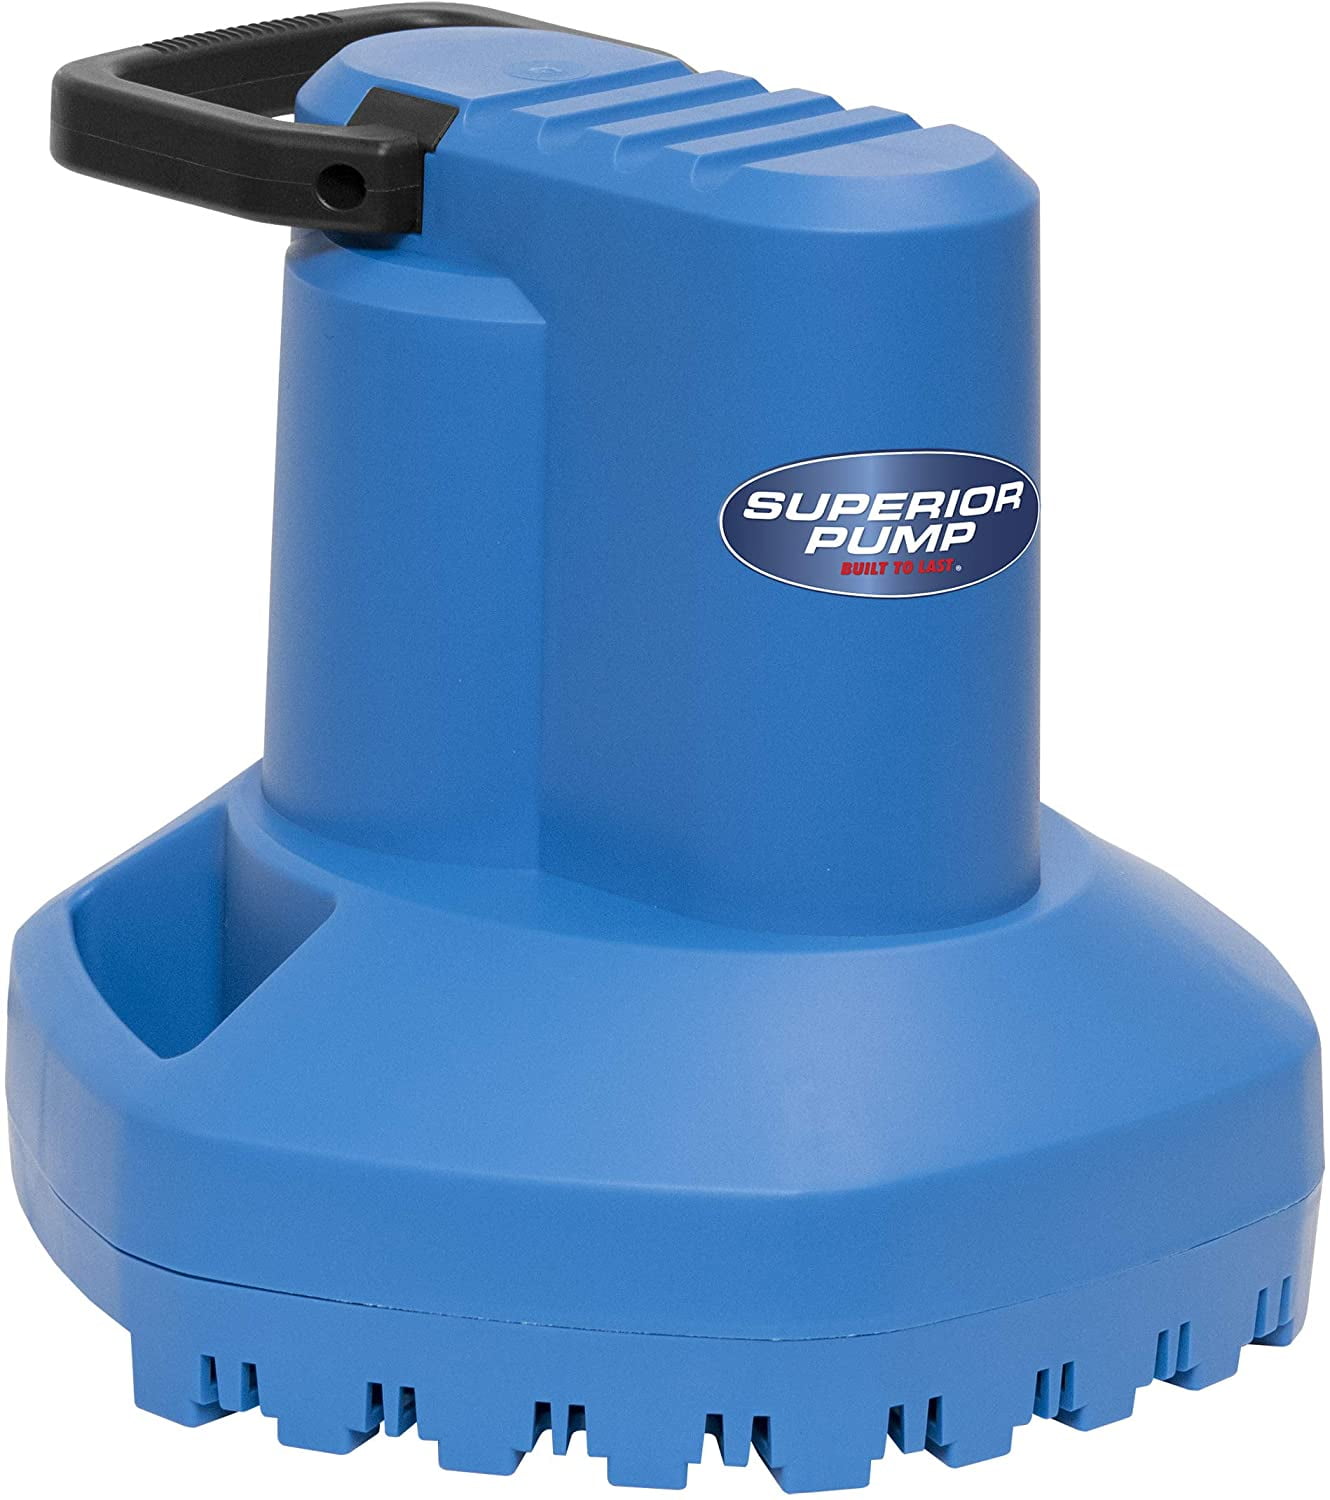 Superior Pump 92398 1700 GPH Thermoplastic Cover Pump, Blue - Walmart.com